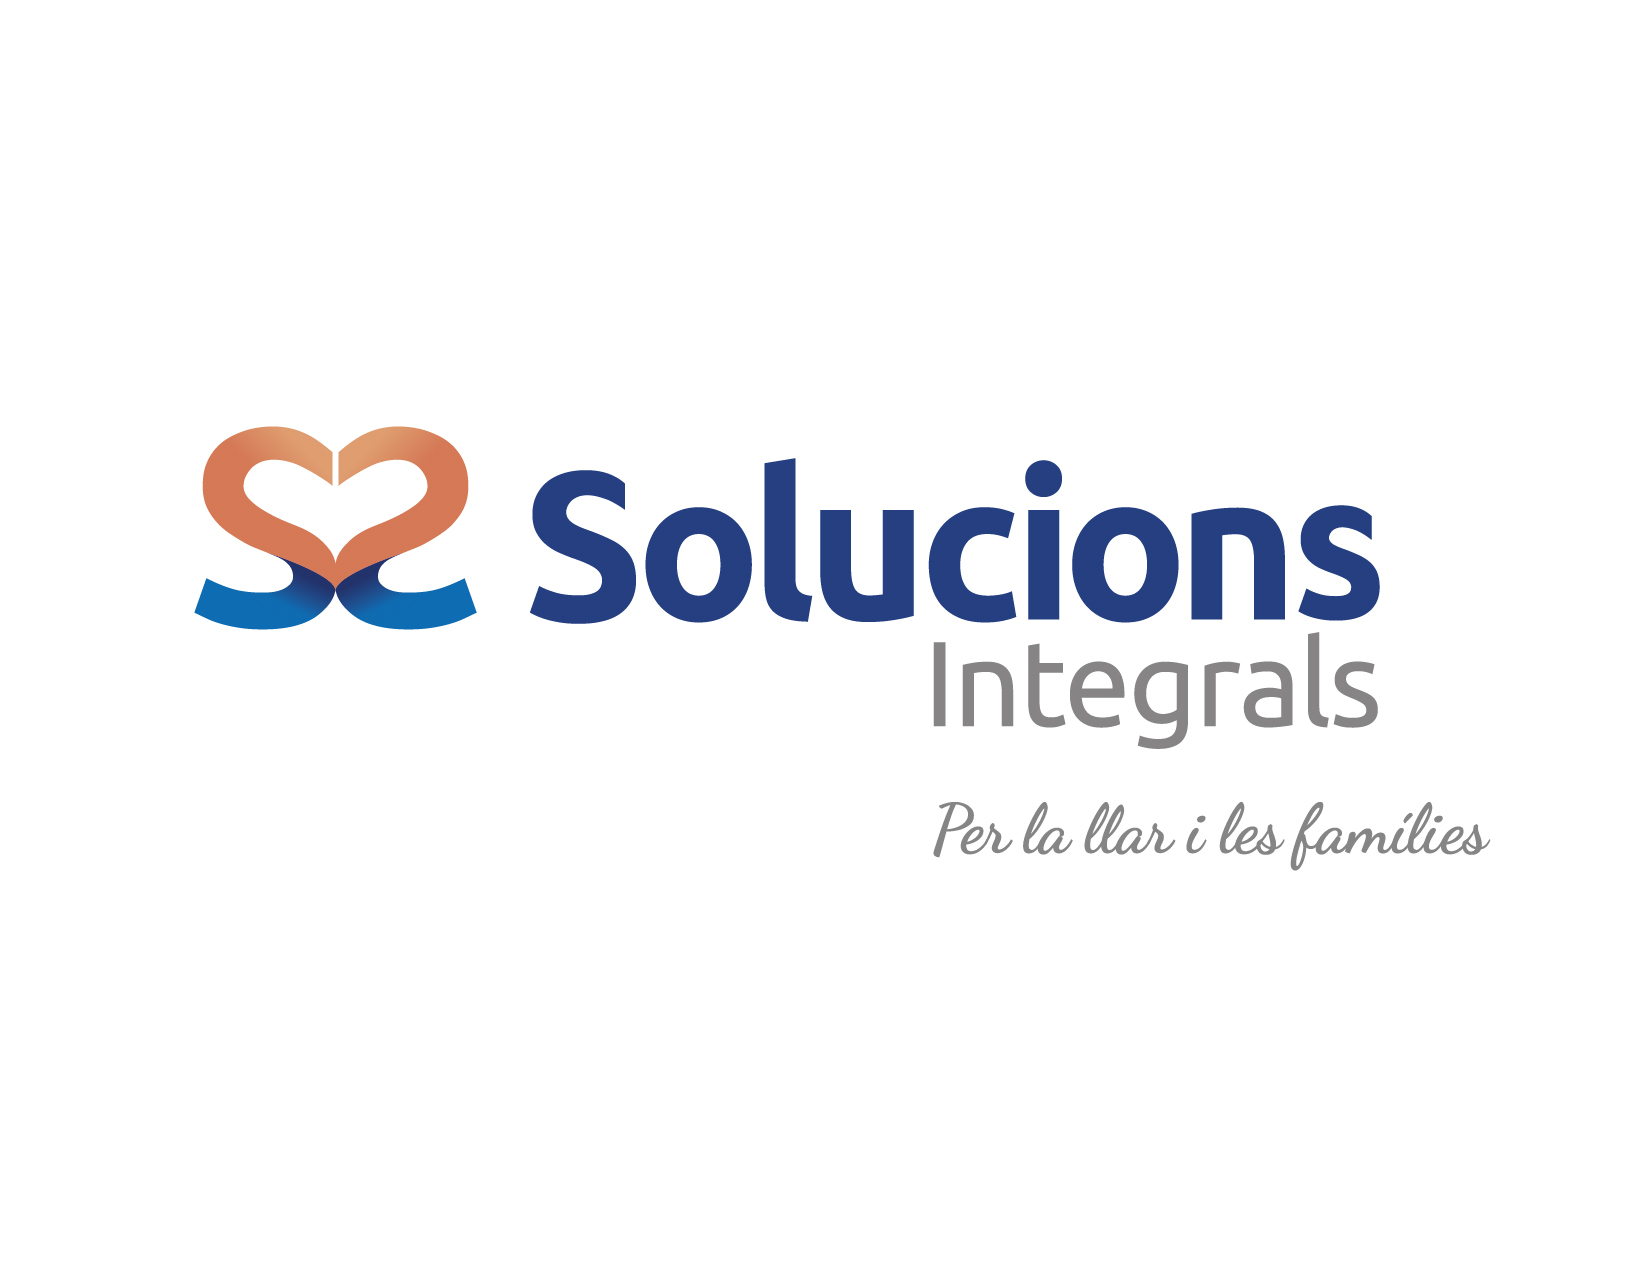 SOLUCIONS INTEGRALS logo